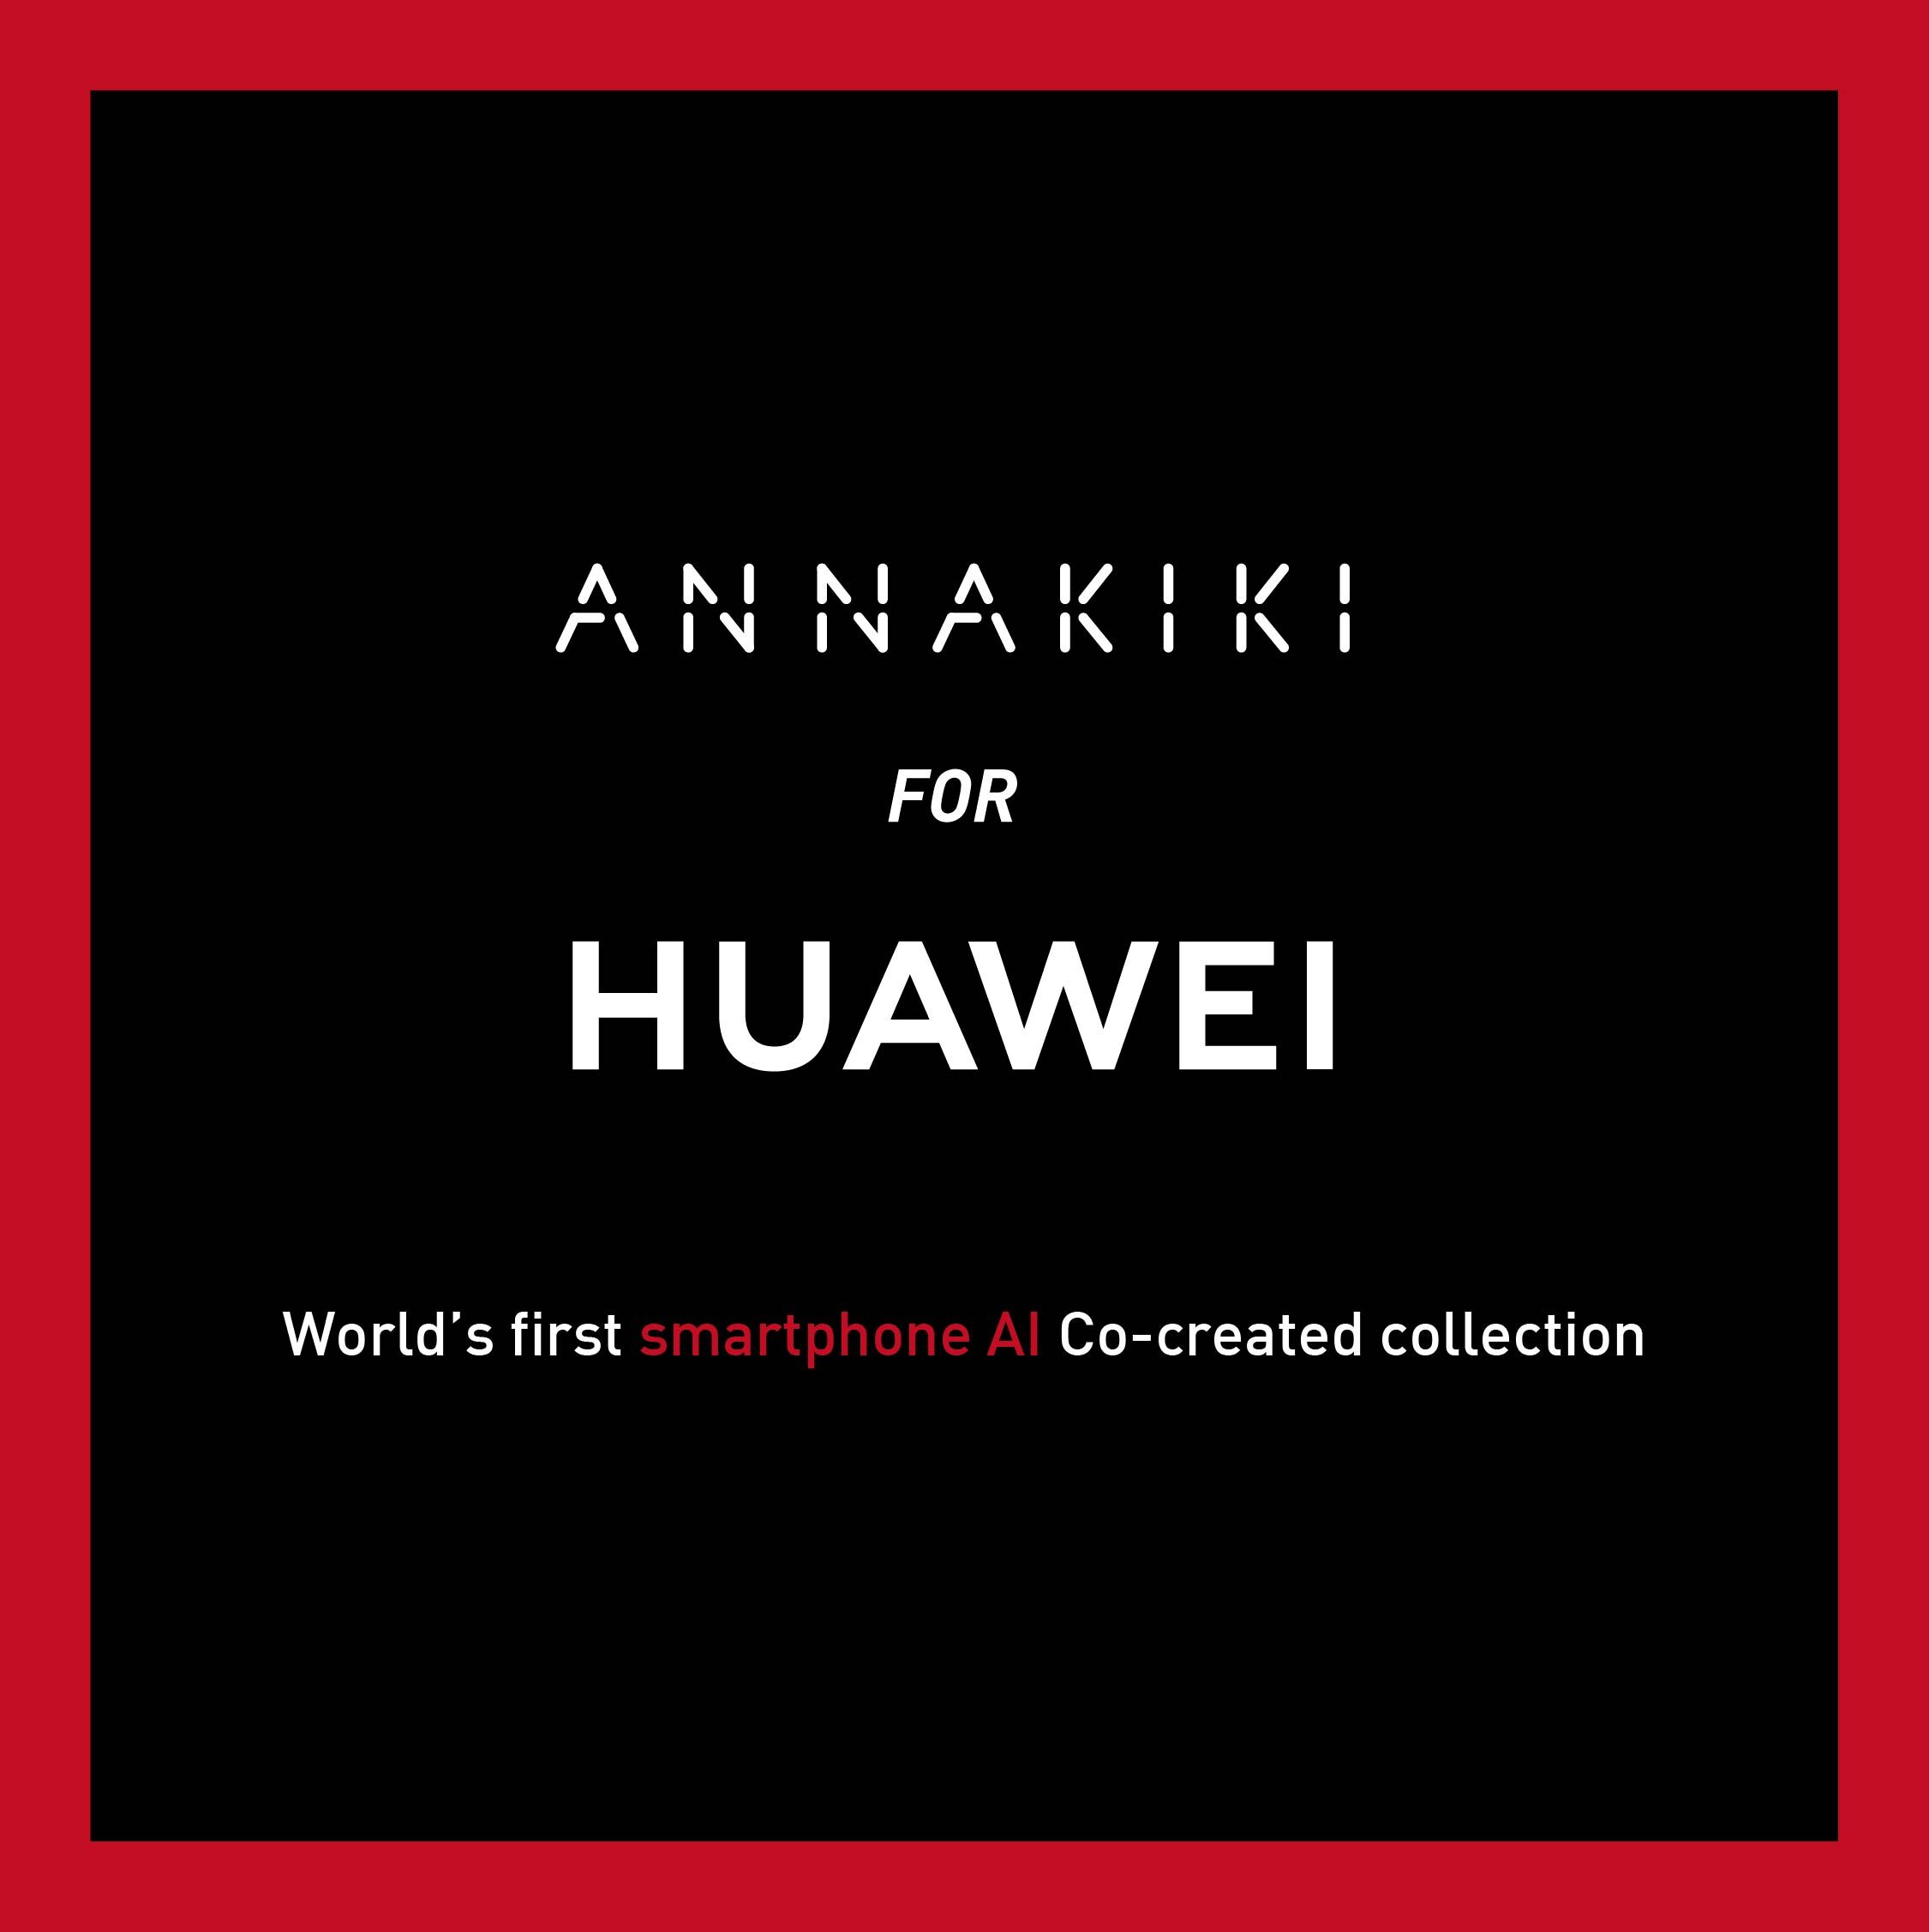 全球首个设计师与人工智能共同创作的“ANNAKIKI FOR HUAWEI”系列亮相米兰